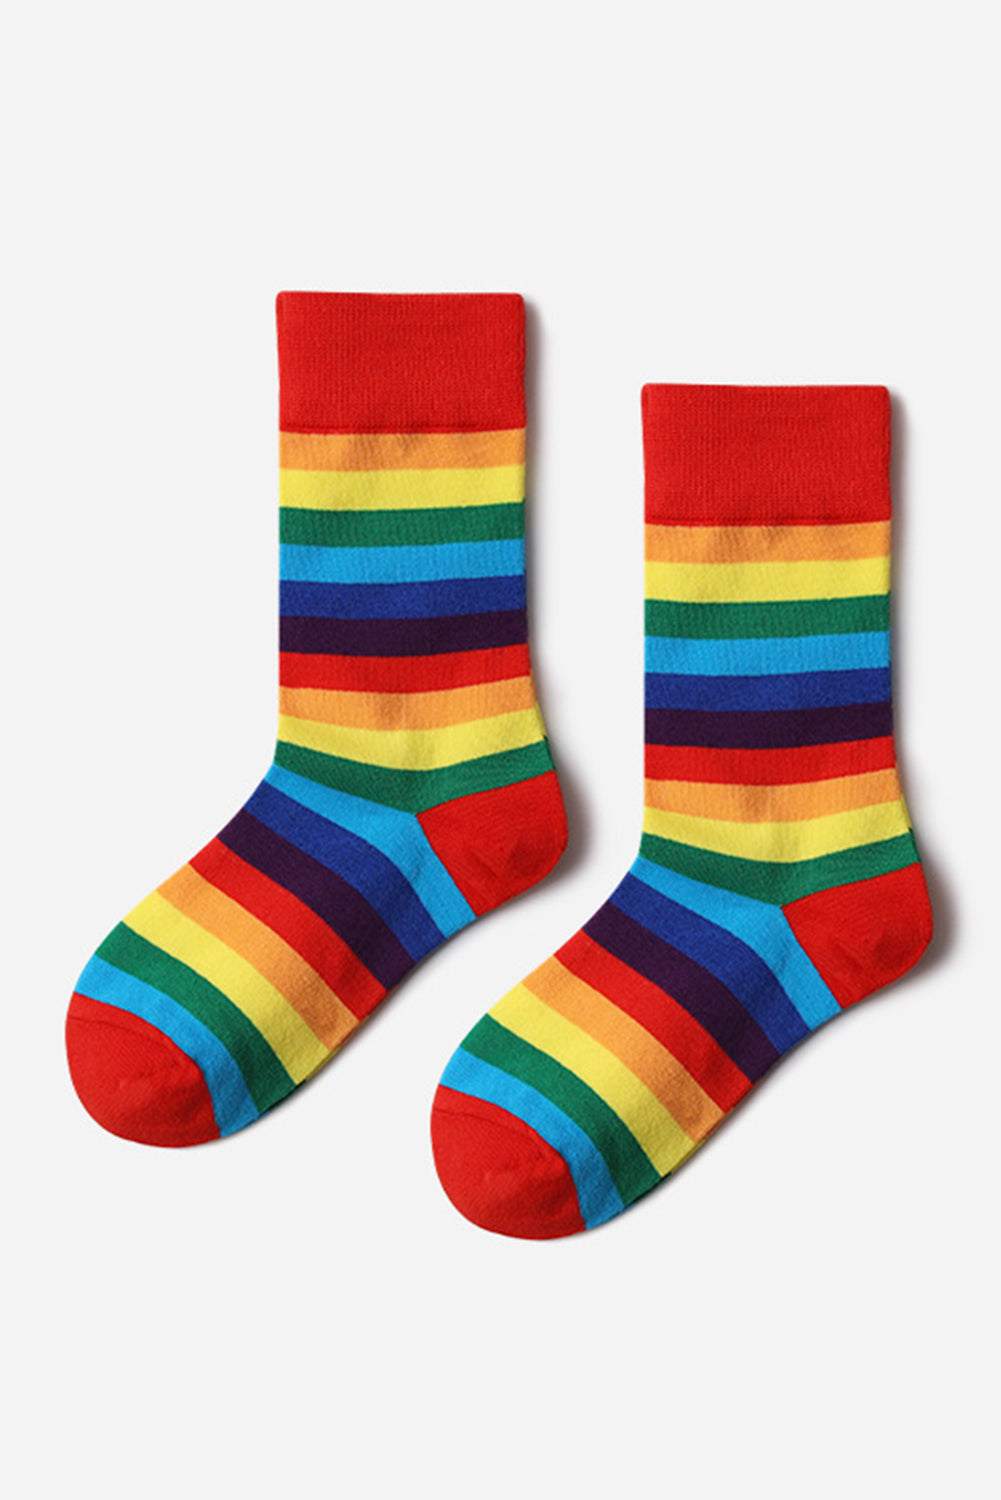 BH041619-3, Red Pride Sport Socks Men Women Rainbow LGBTQ Accessories Socks